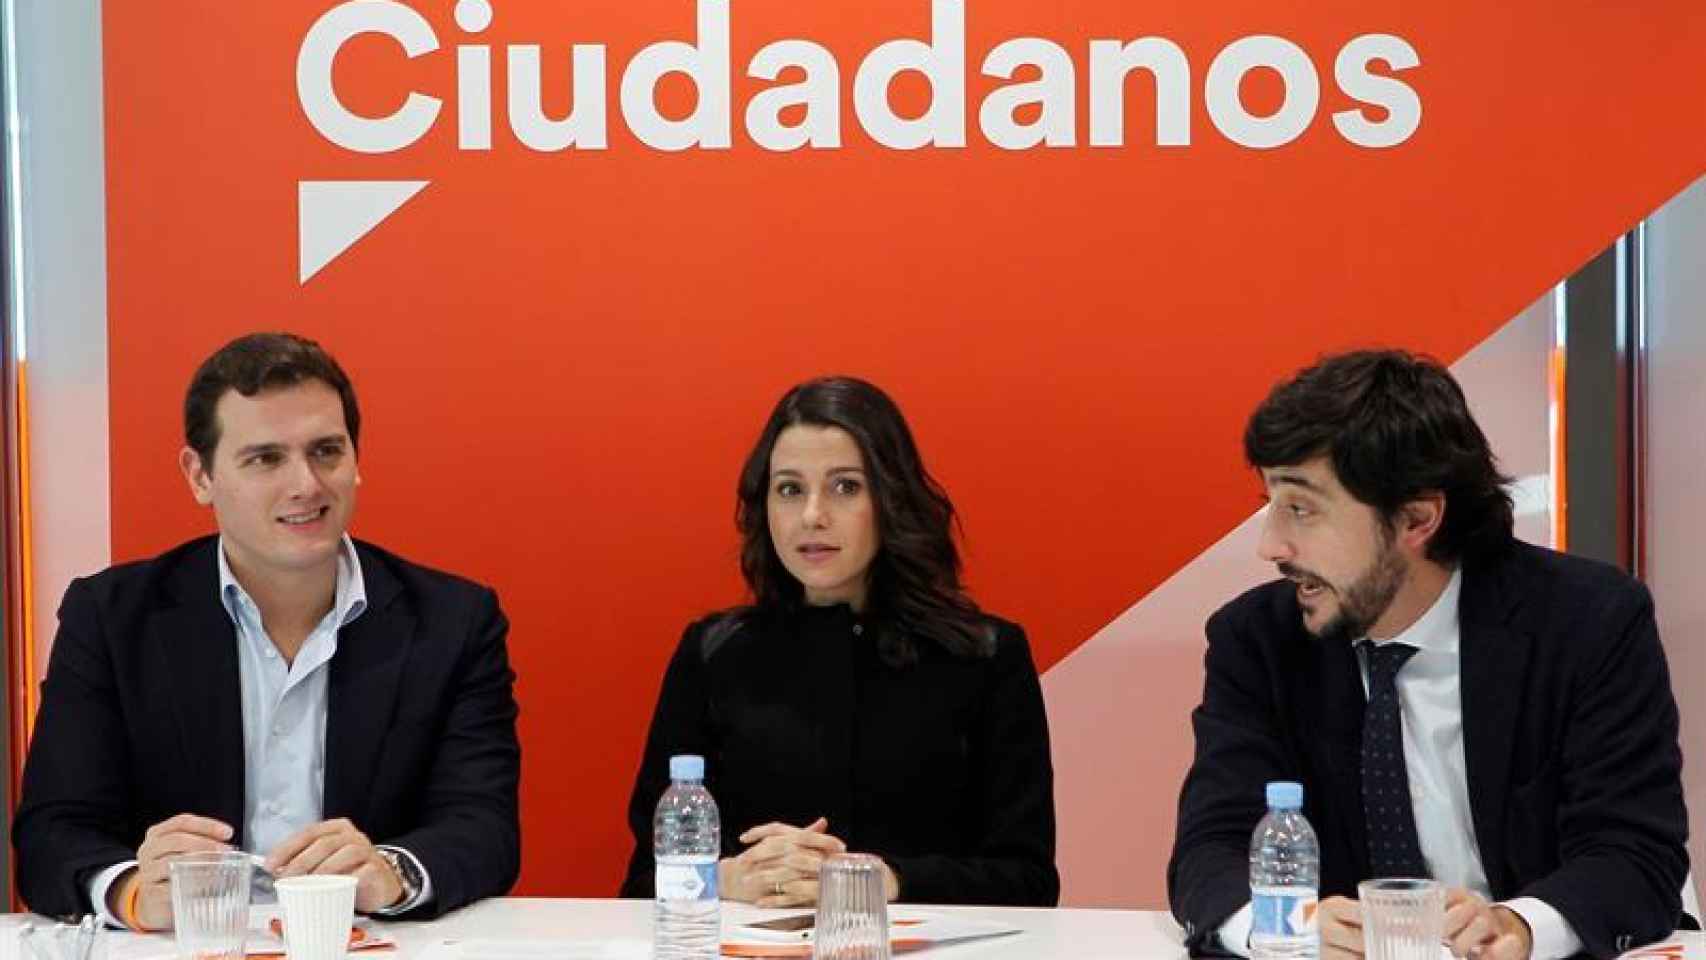 Rivera, Arrimadas y Toni Roldán, este lunes en Madrid.